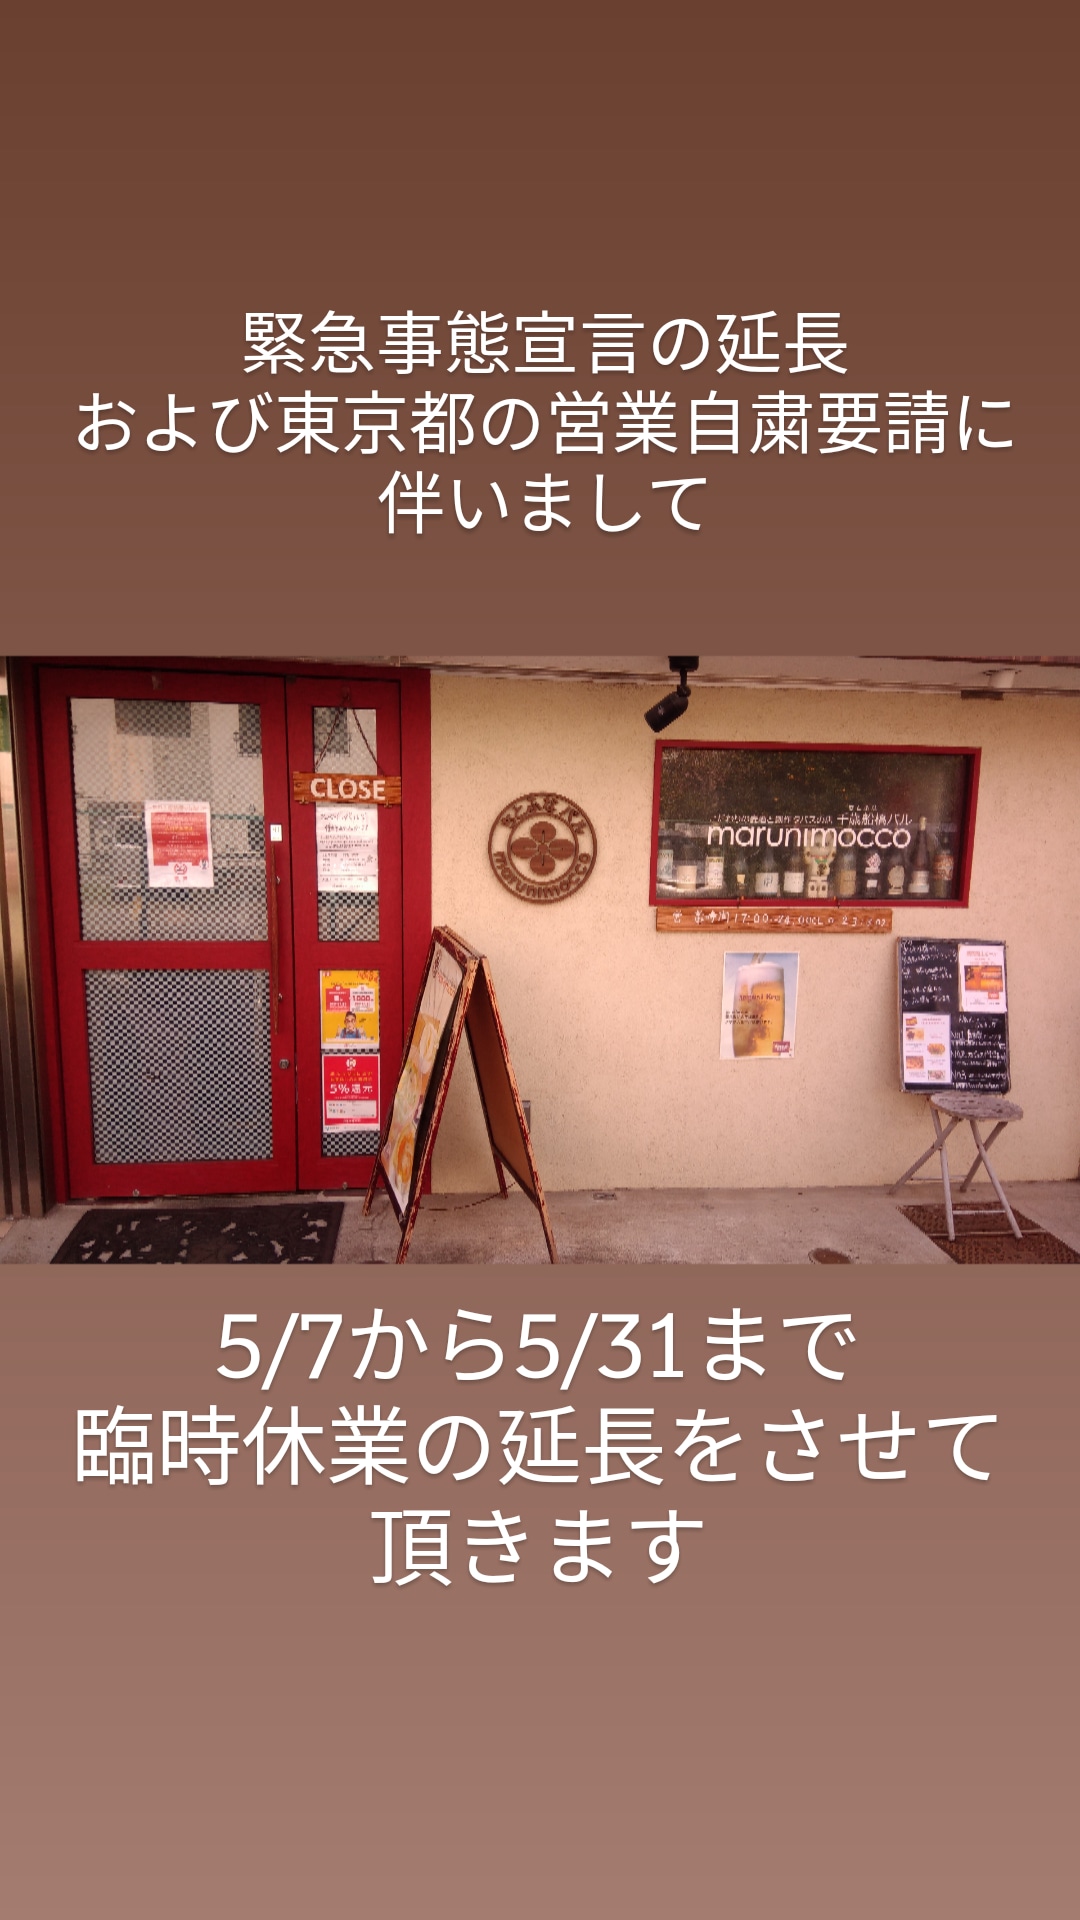 緊急事態宣言および東京都営業自粛要請に伴う臨時休業の延長のお知らせ。